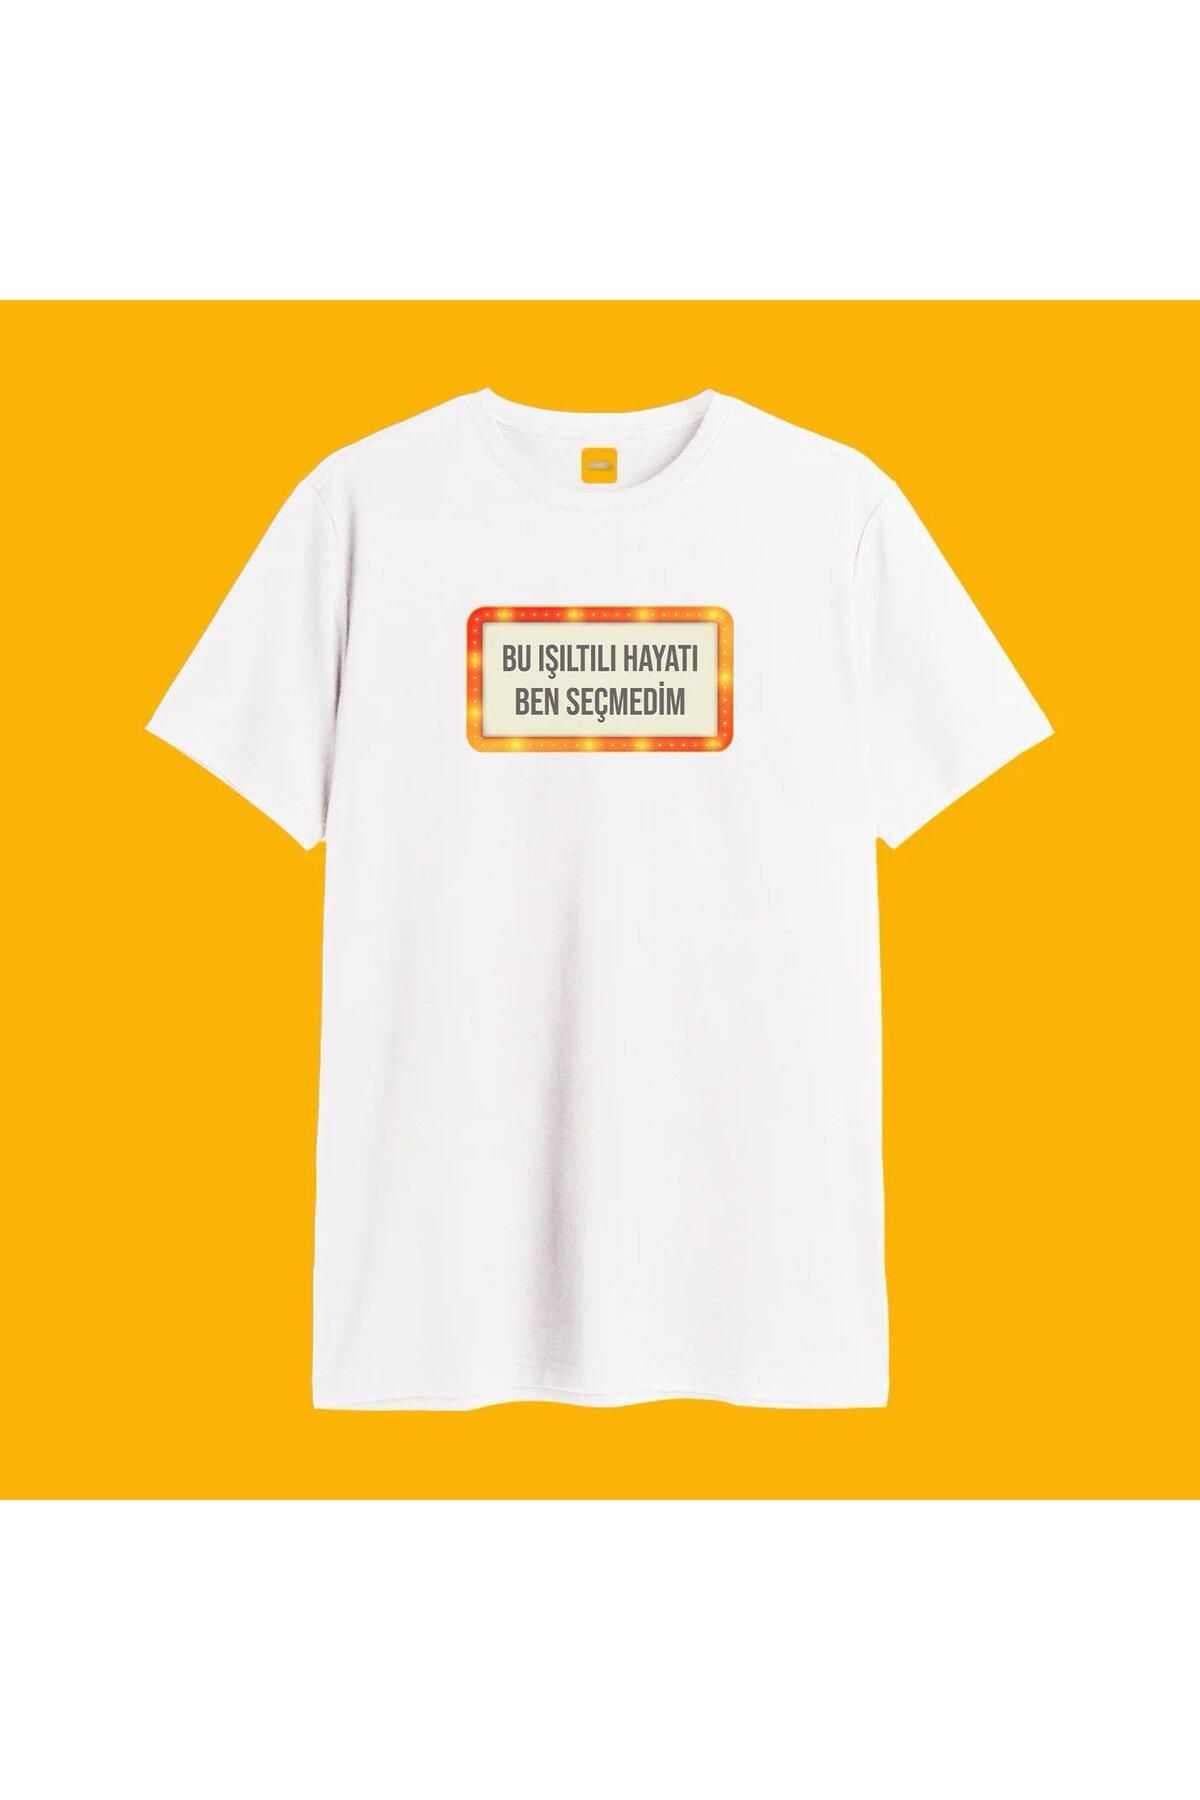 Khione Unisex Tasarım Bu Işıltılı Hayatı Ben Seçmedim Baskılı Oversize %100 Pamuk T-shirt